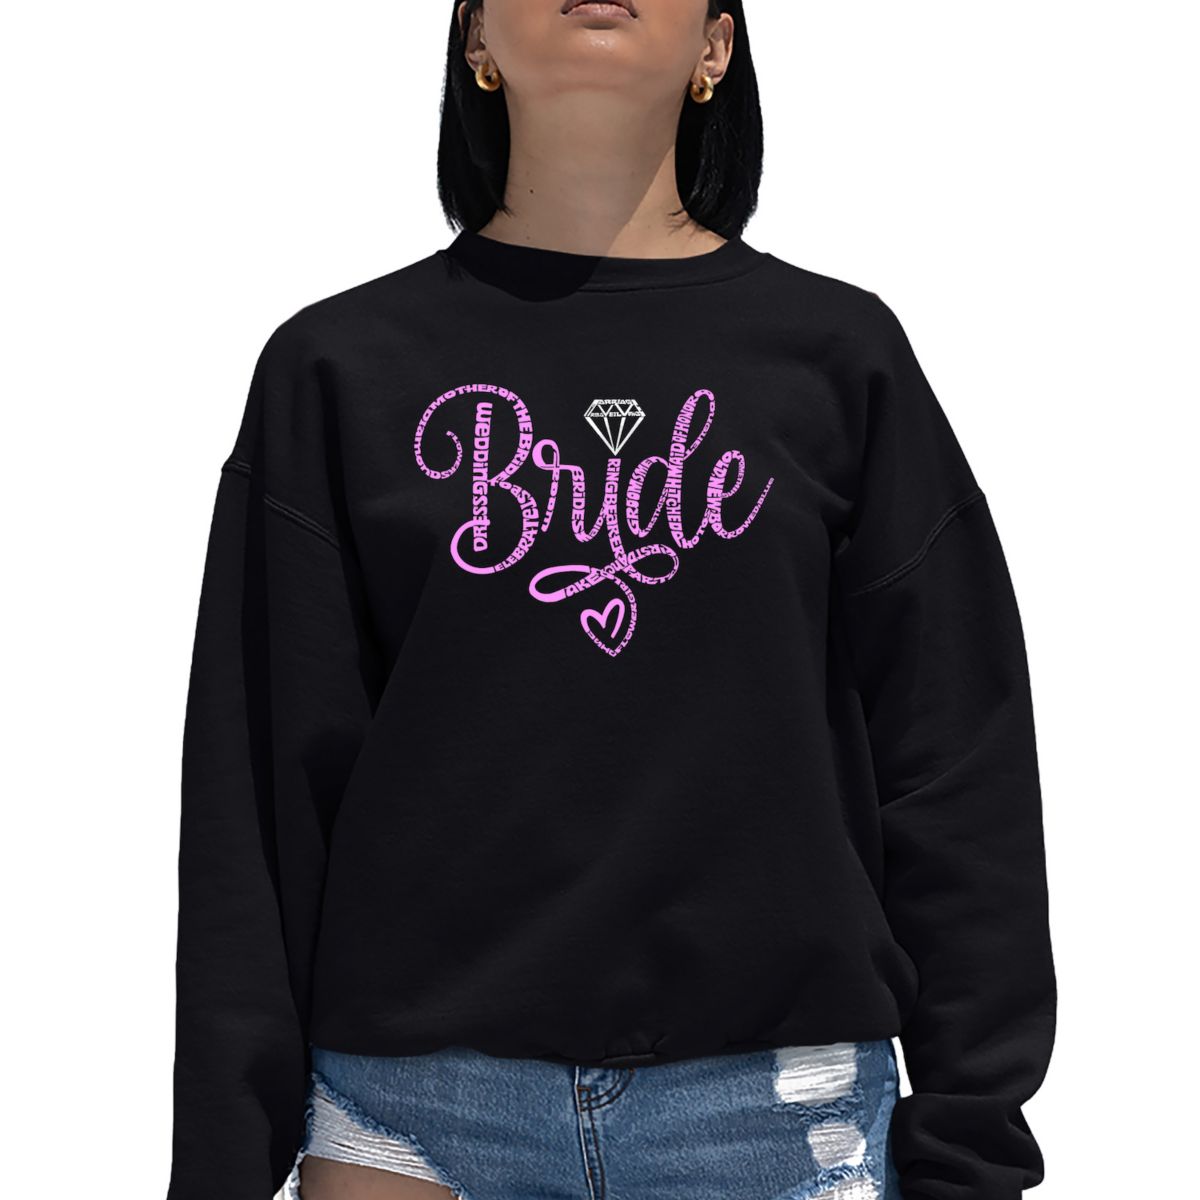 Bride - Women's Word Art Crewneck Sweatshirt LA Pop Art